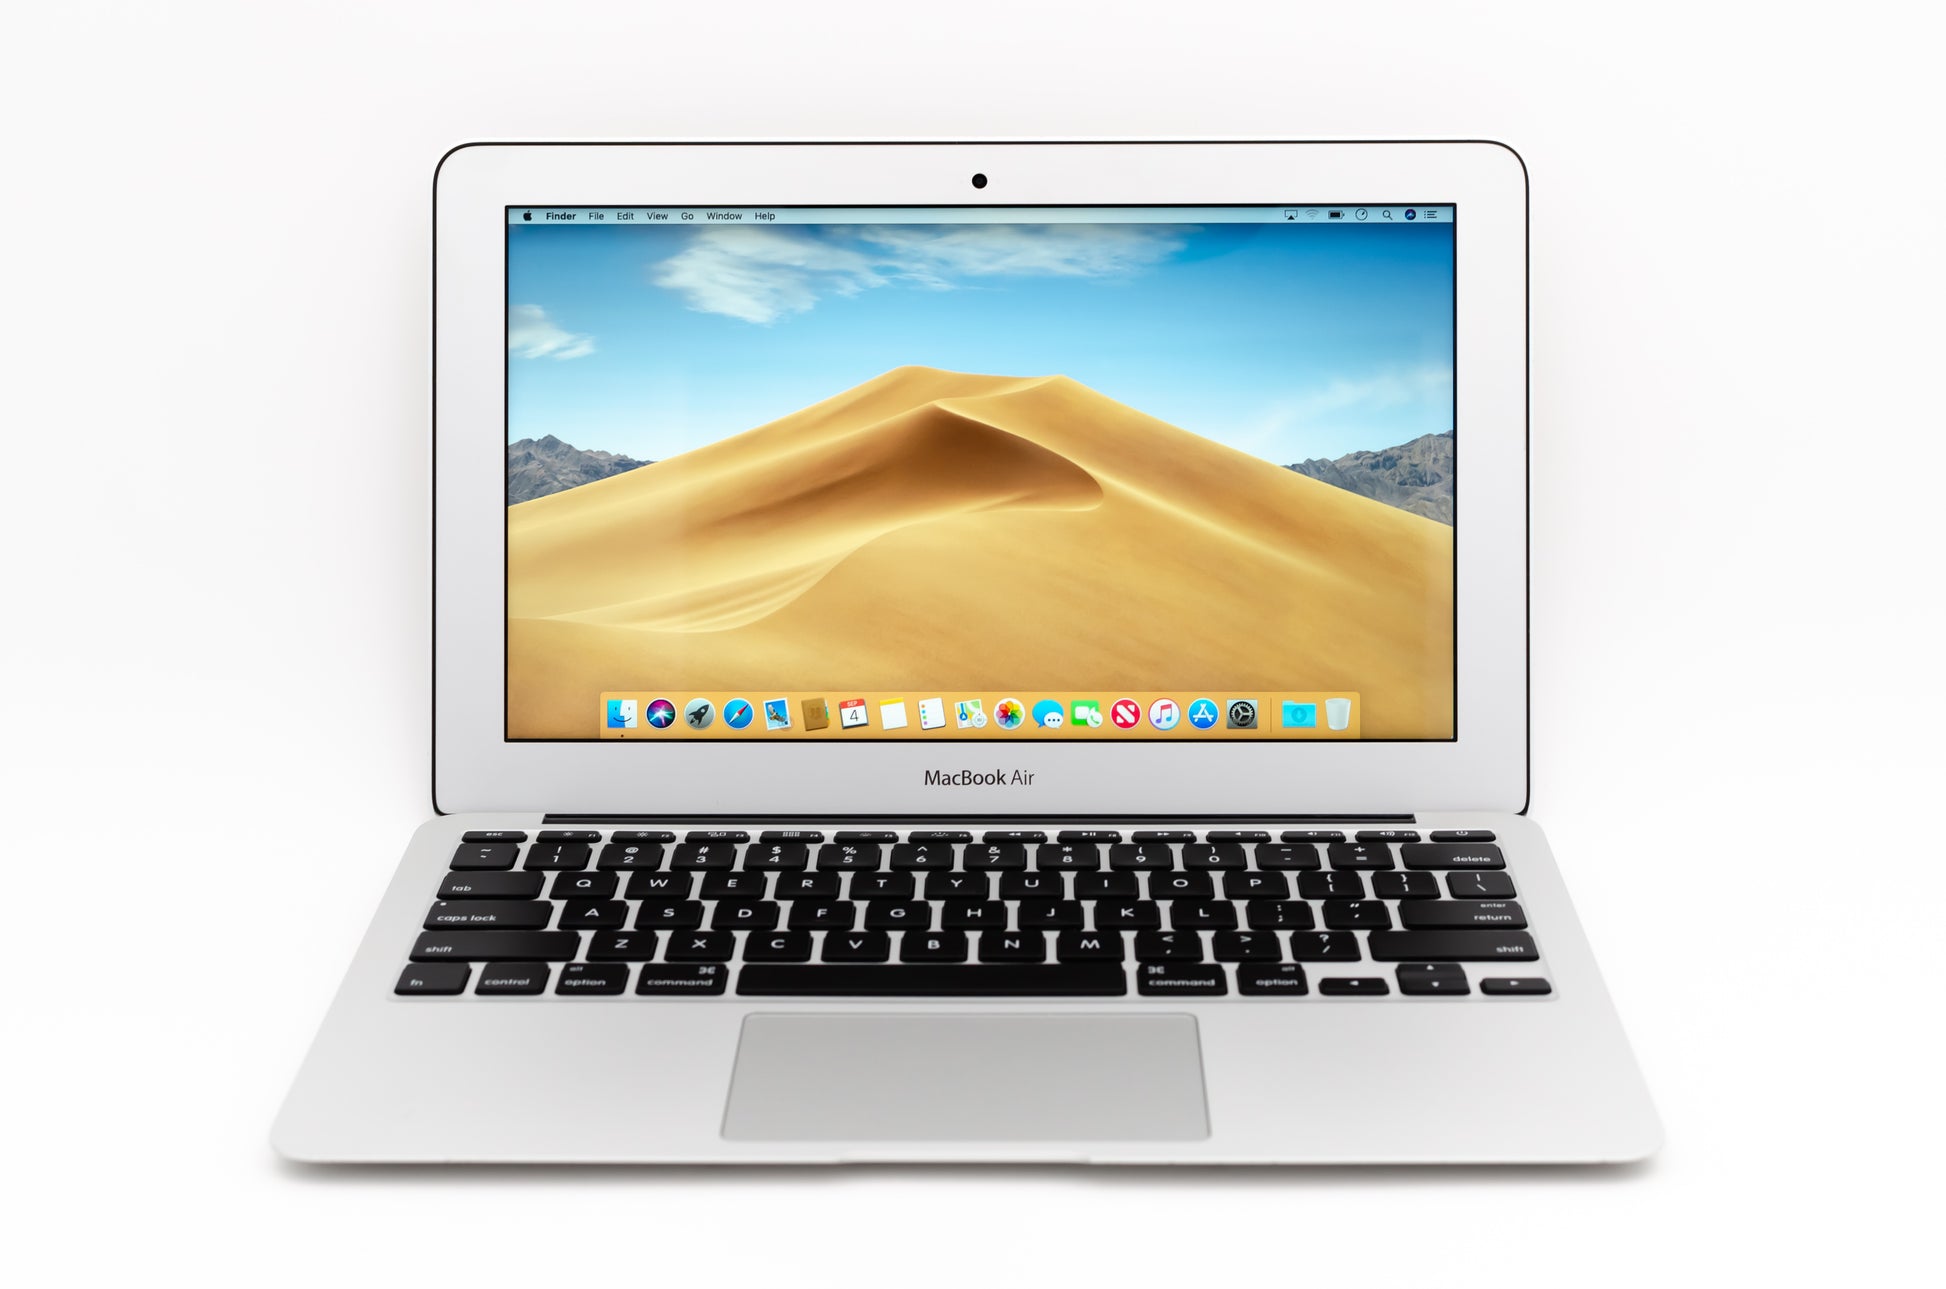 apple-late-2010-11.6-inch-macbook-air-a1370-aluminum-c2d - 1.4ghz processor, 2gb ram, 320m - 256mb gpu-mc505ll/a-1